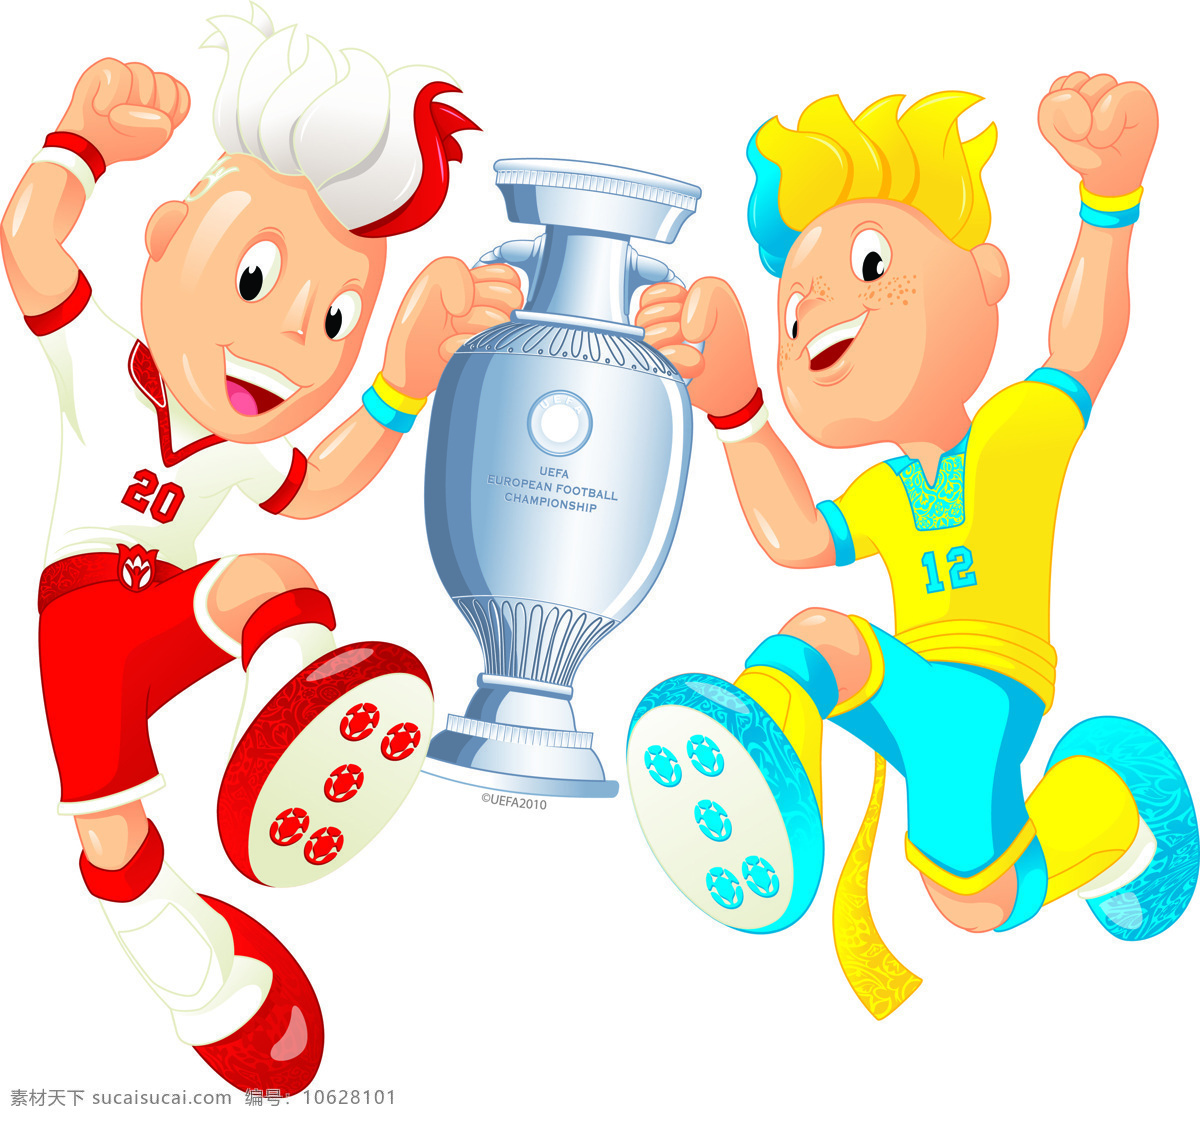 动漫动画 动漫人物 奖杯 胜利 体育 运动 足球 欧州 杯 吉祥物 设计素材 模板下载 欧州杯吉祥物 矢量图 日常生活